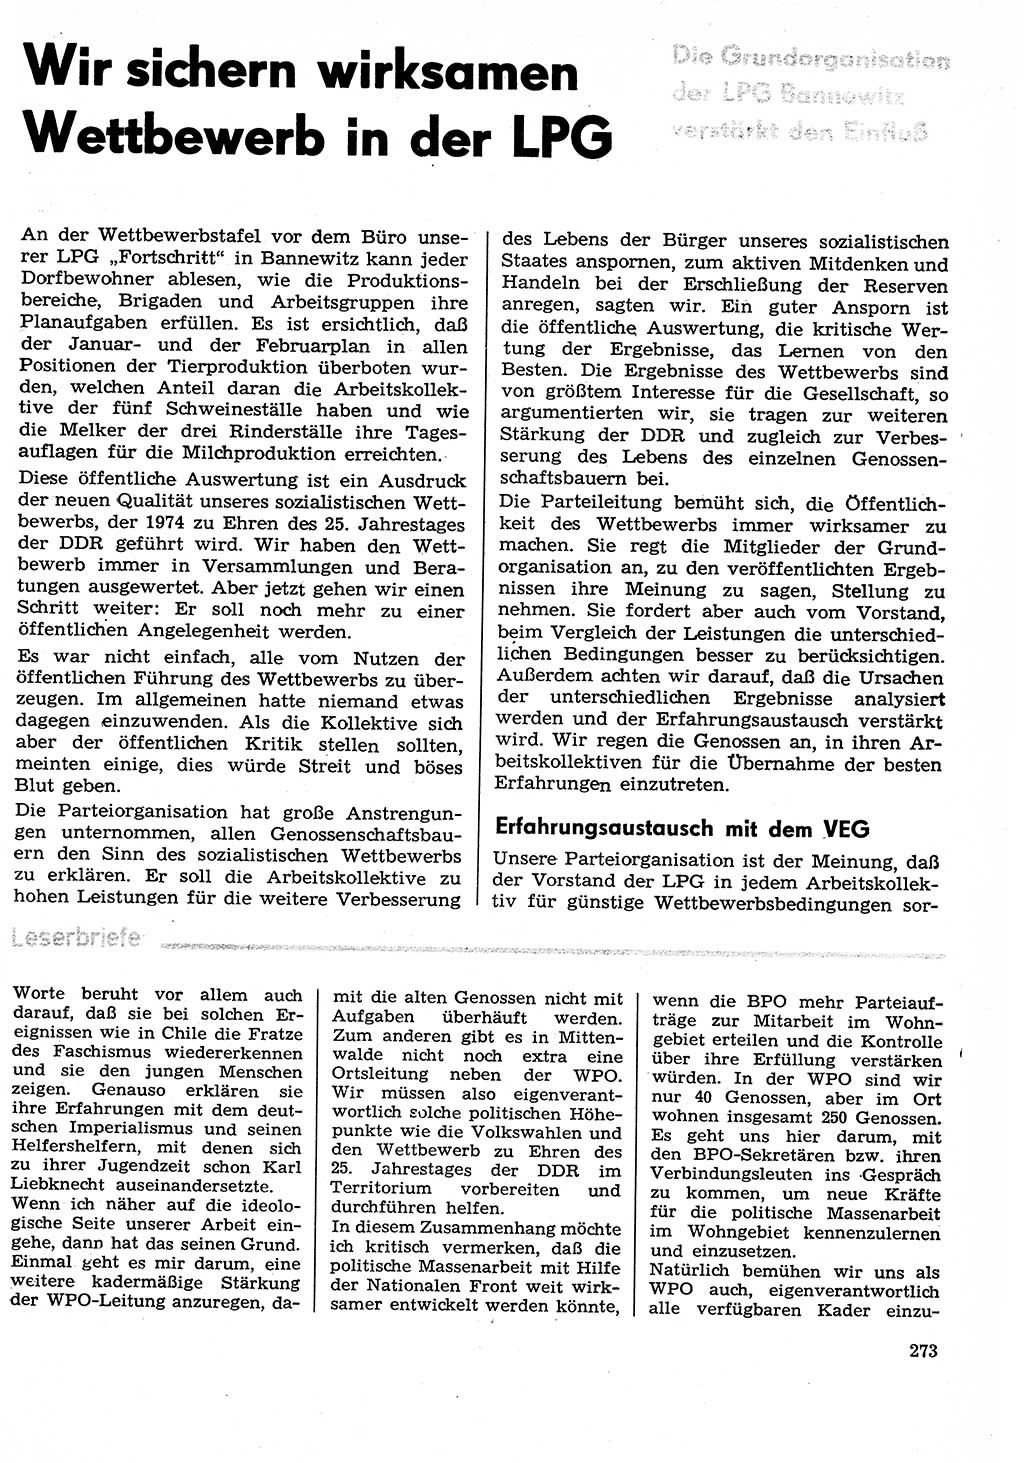 Neuer Weg (NW), Organ des Zentralkomitees (ZK) der SED (Sozialistische Einheitspartei Deutschlands) für Fragen des Parteilebens, 29. Jahrgang [Deutsche Demokratische Republik (DDR)] 1974, Seite 273 (NW ZK SED DDR 1974, S. 273)